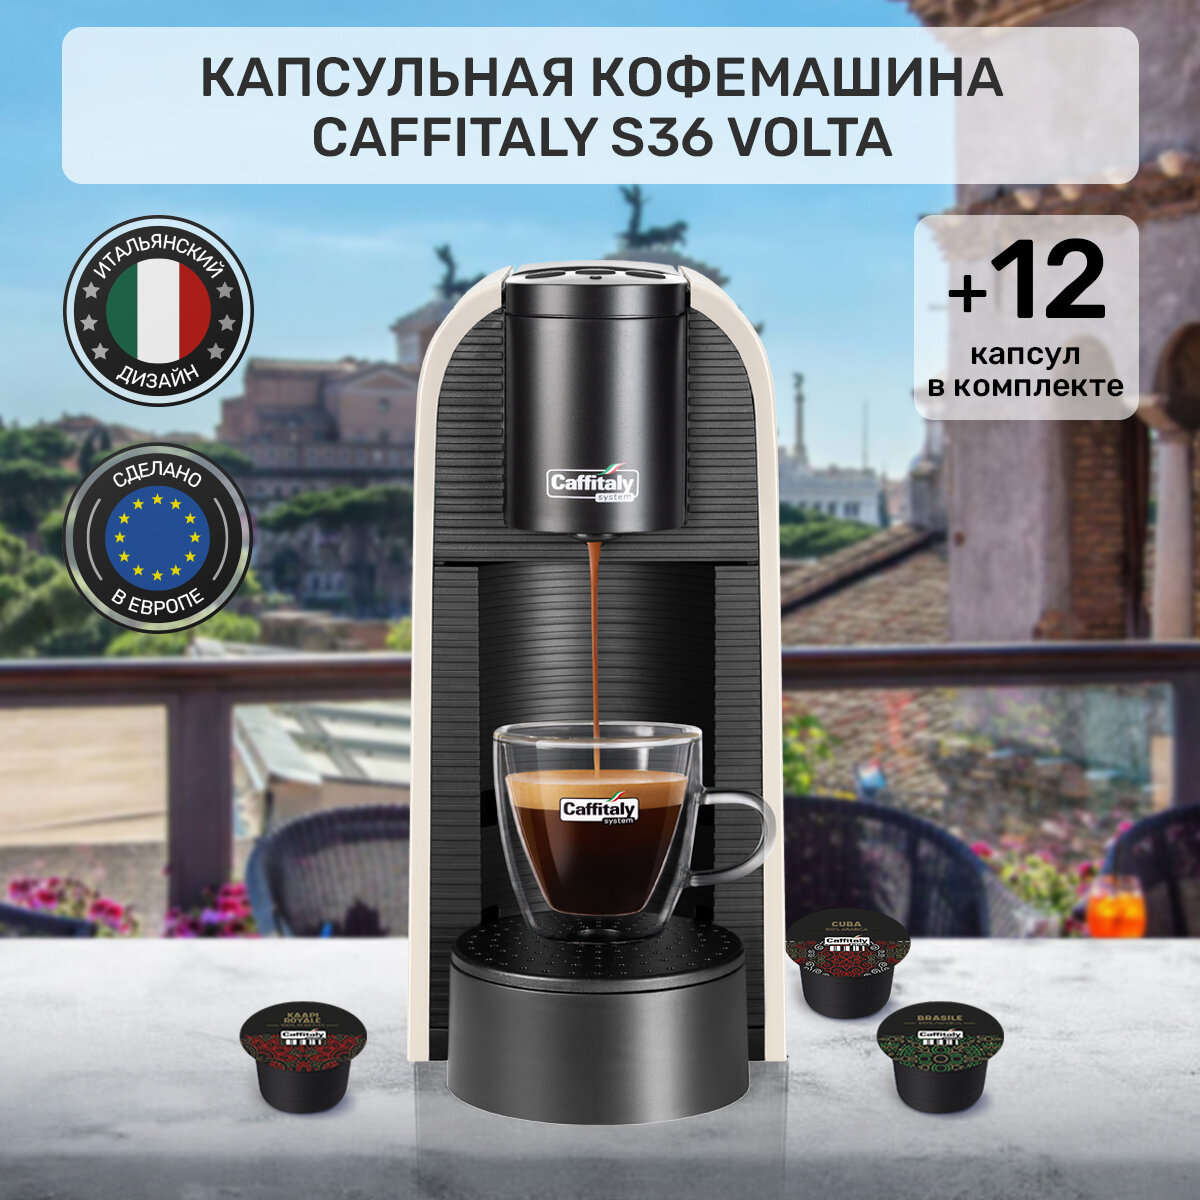 Кофемашина капсульная Caffitaly Volta S36, белая и 12 капсул кофе ассорти